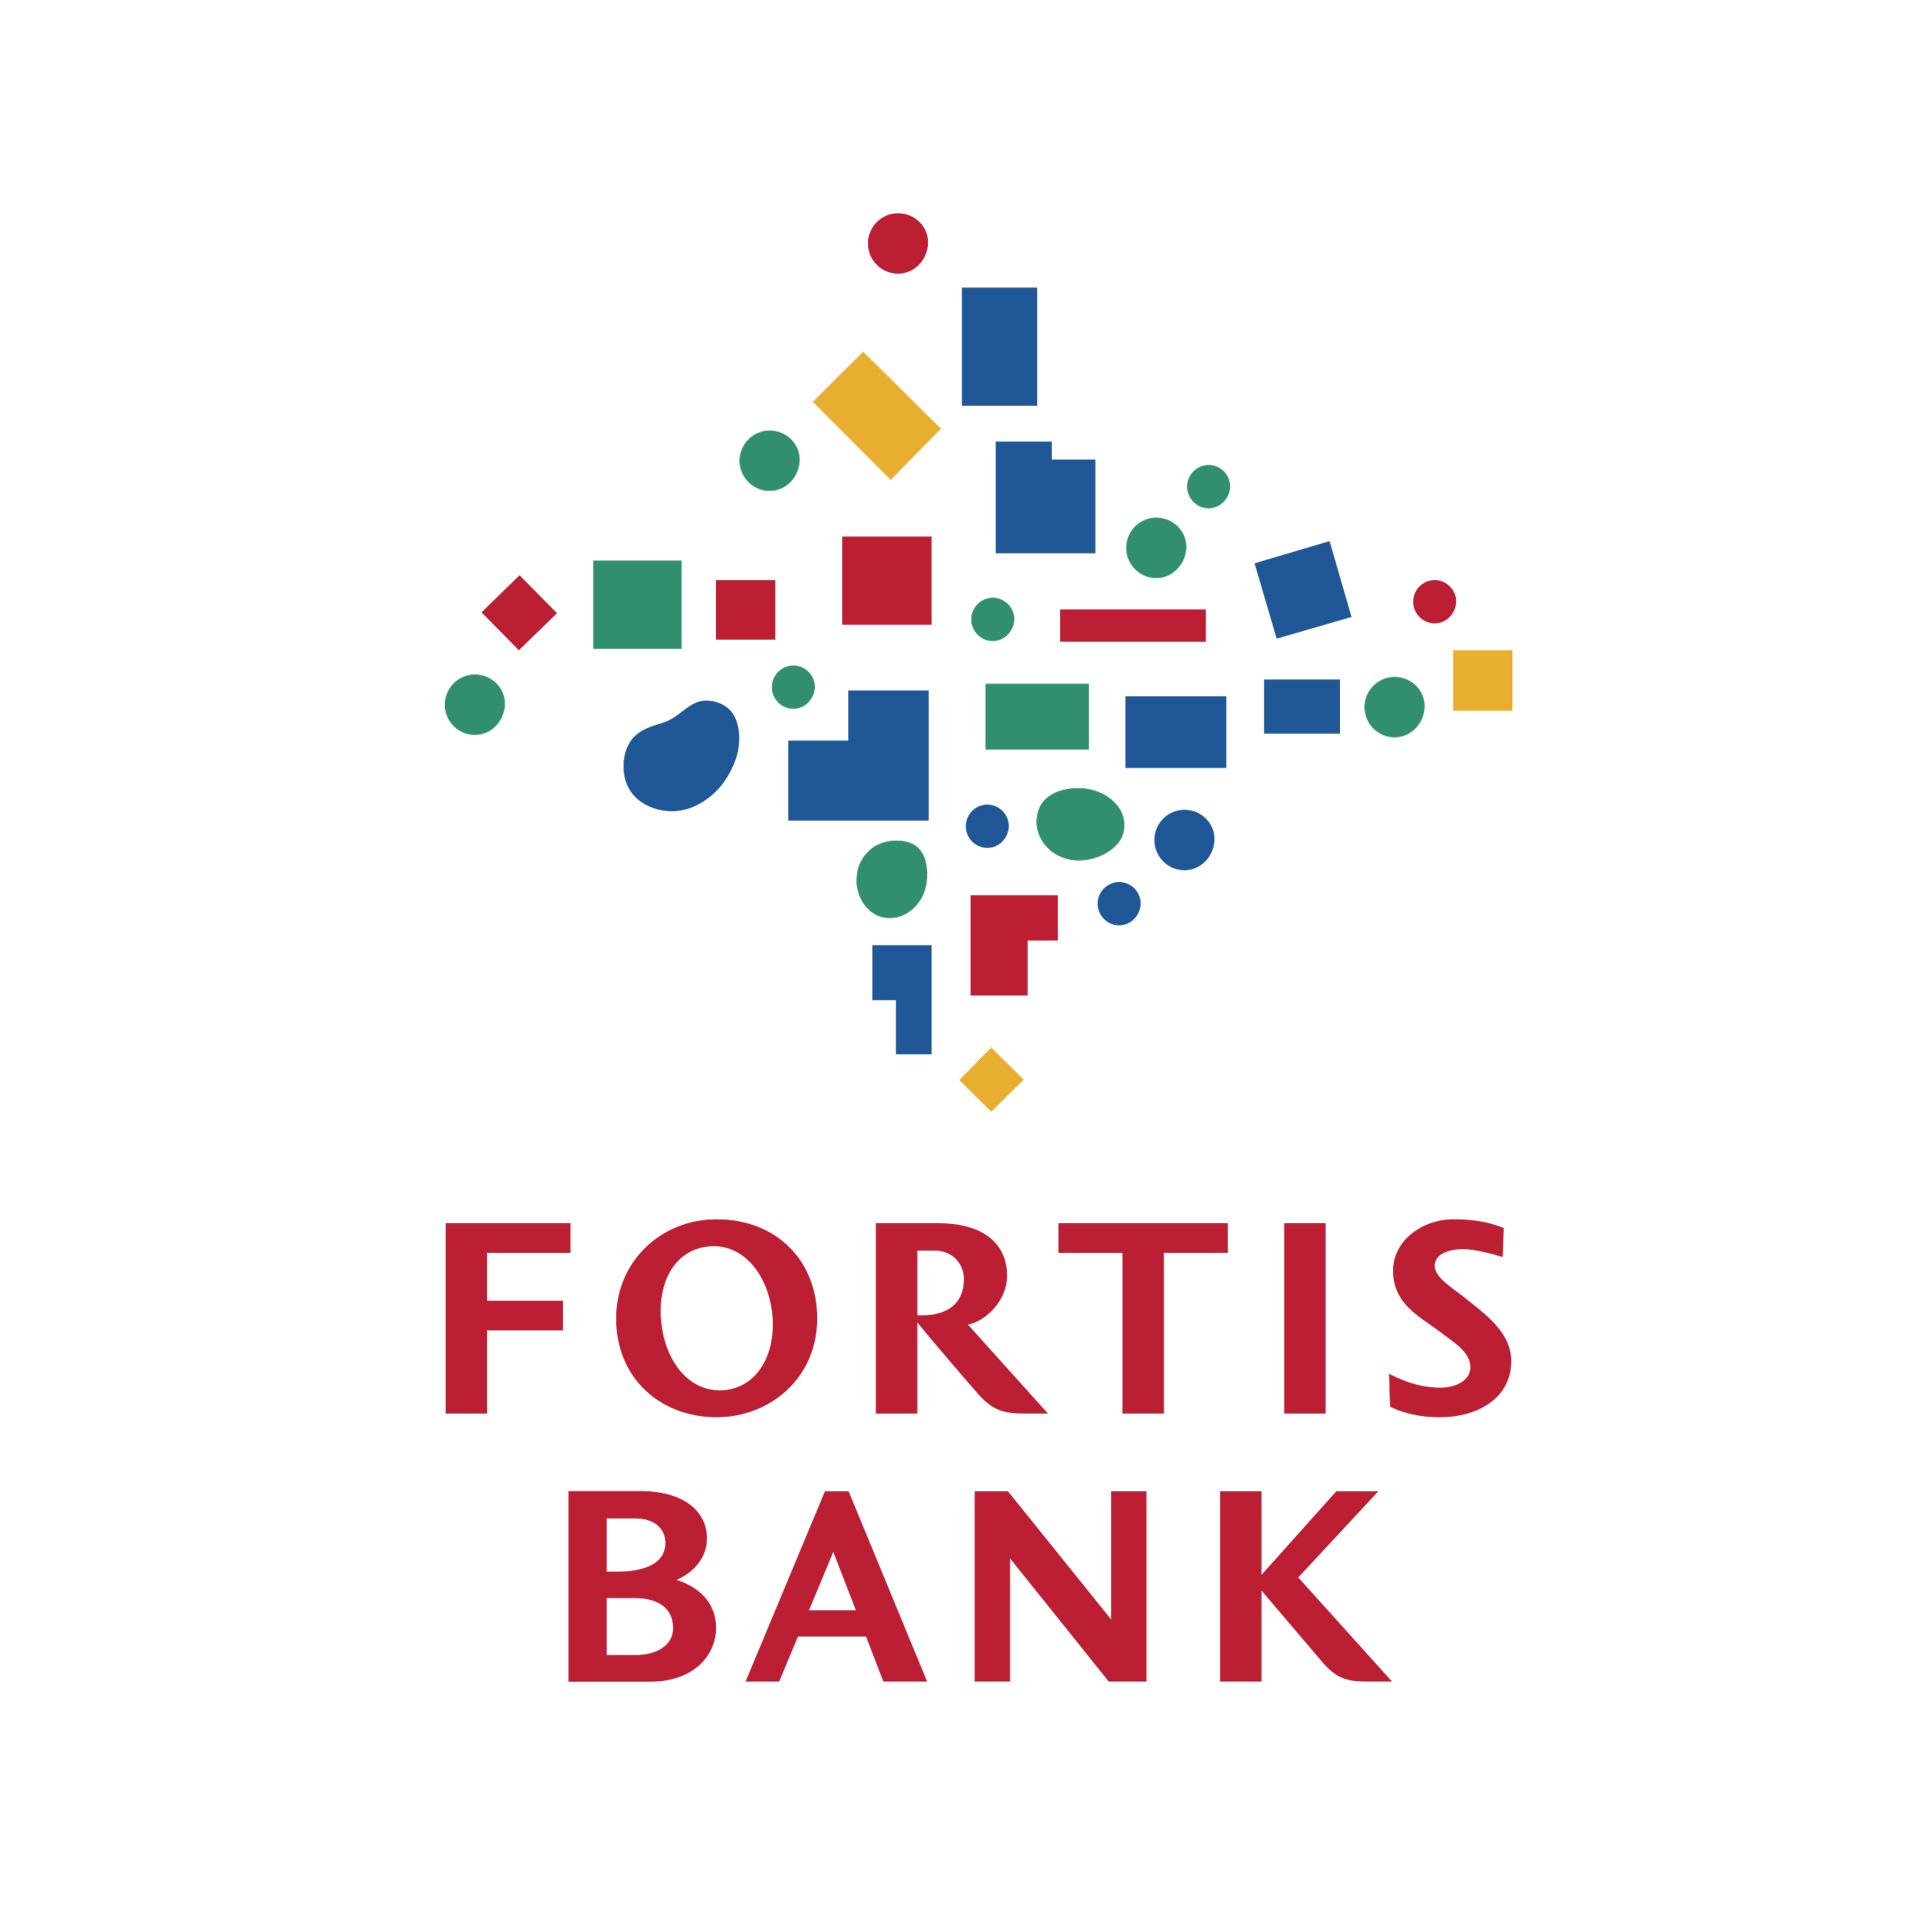 logo-fortis-bank